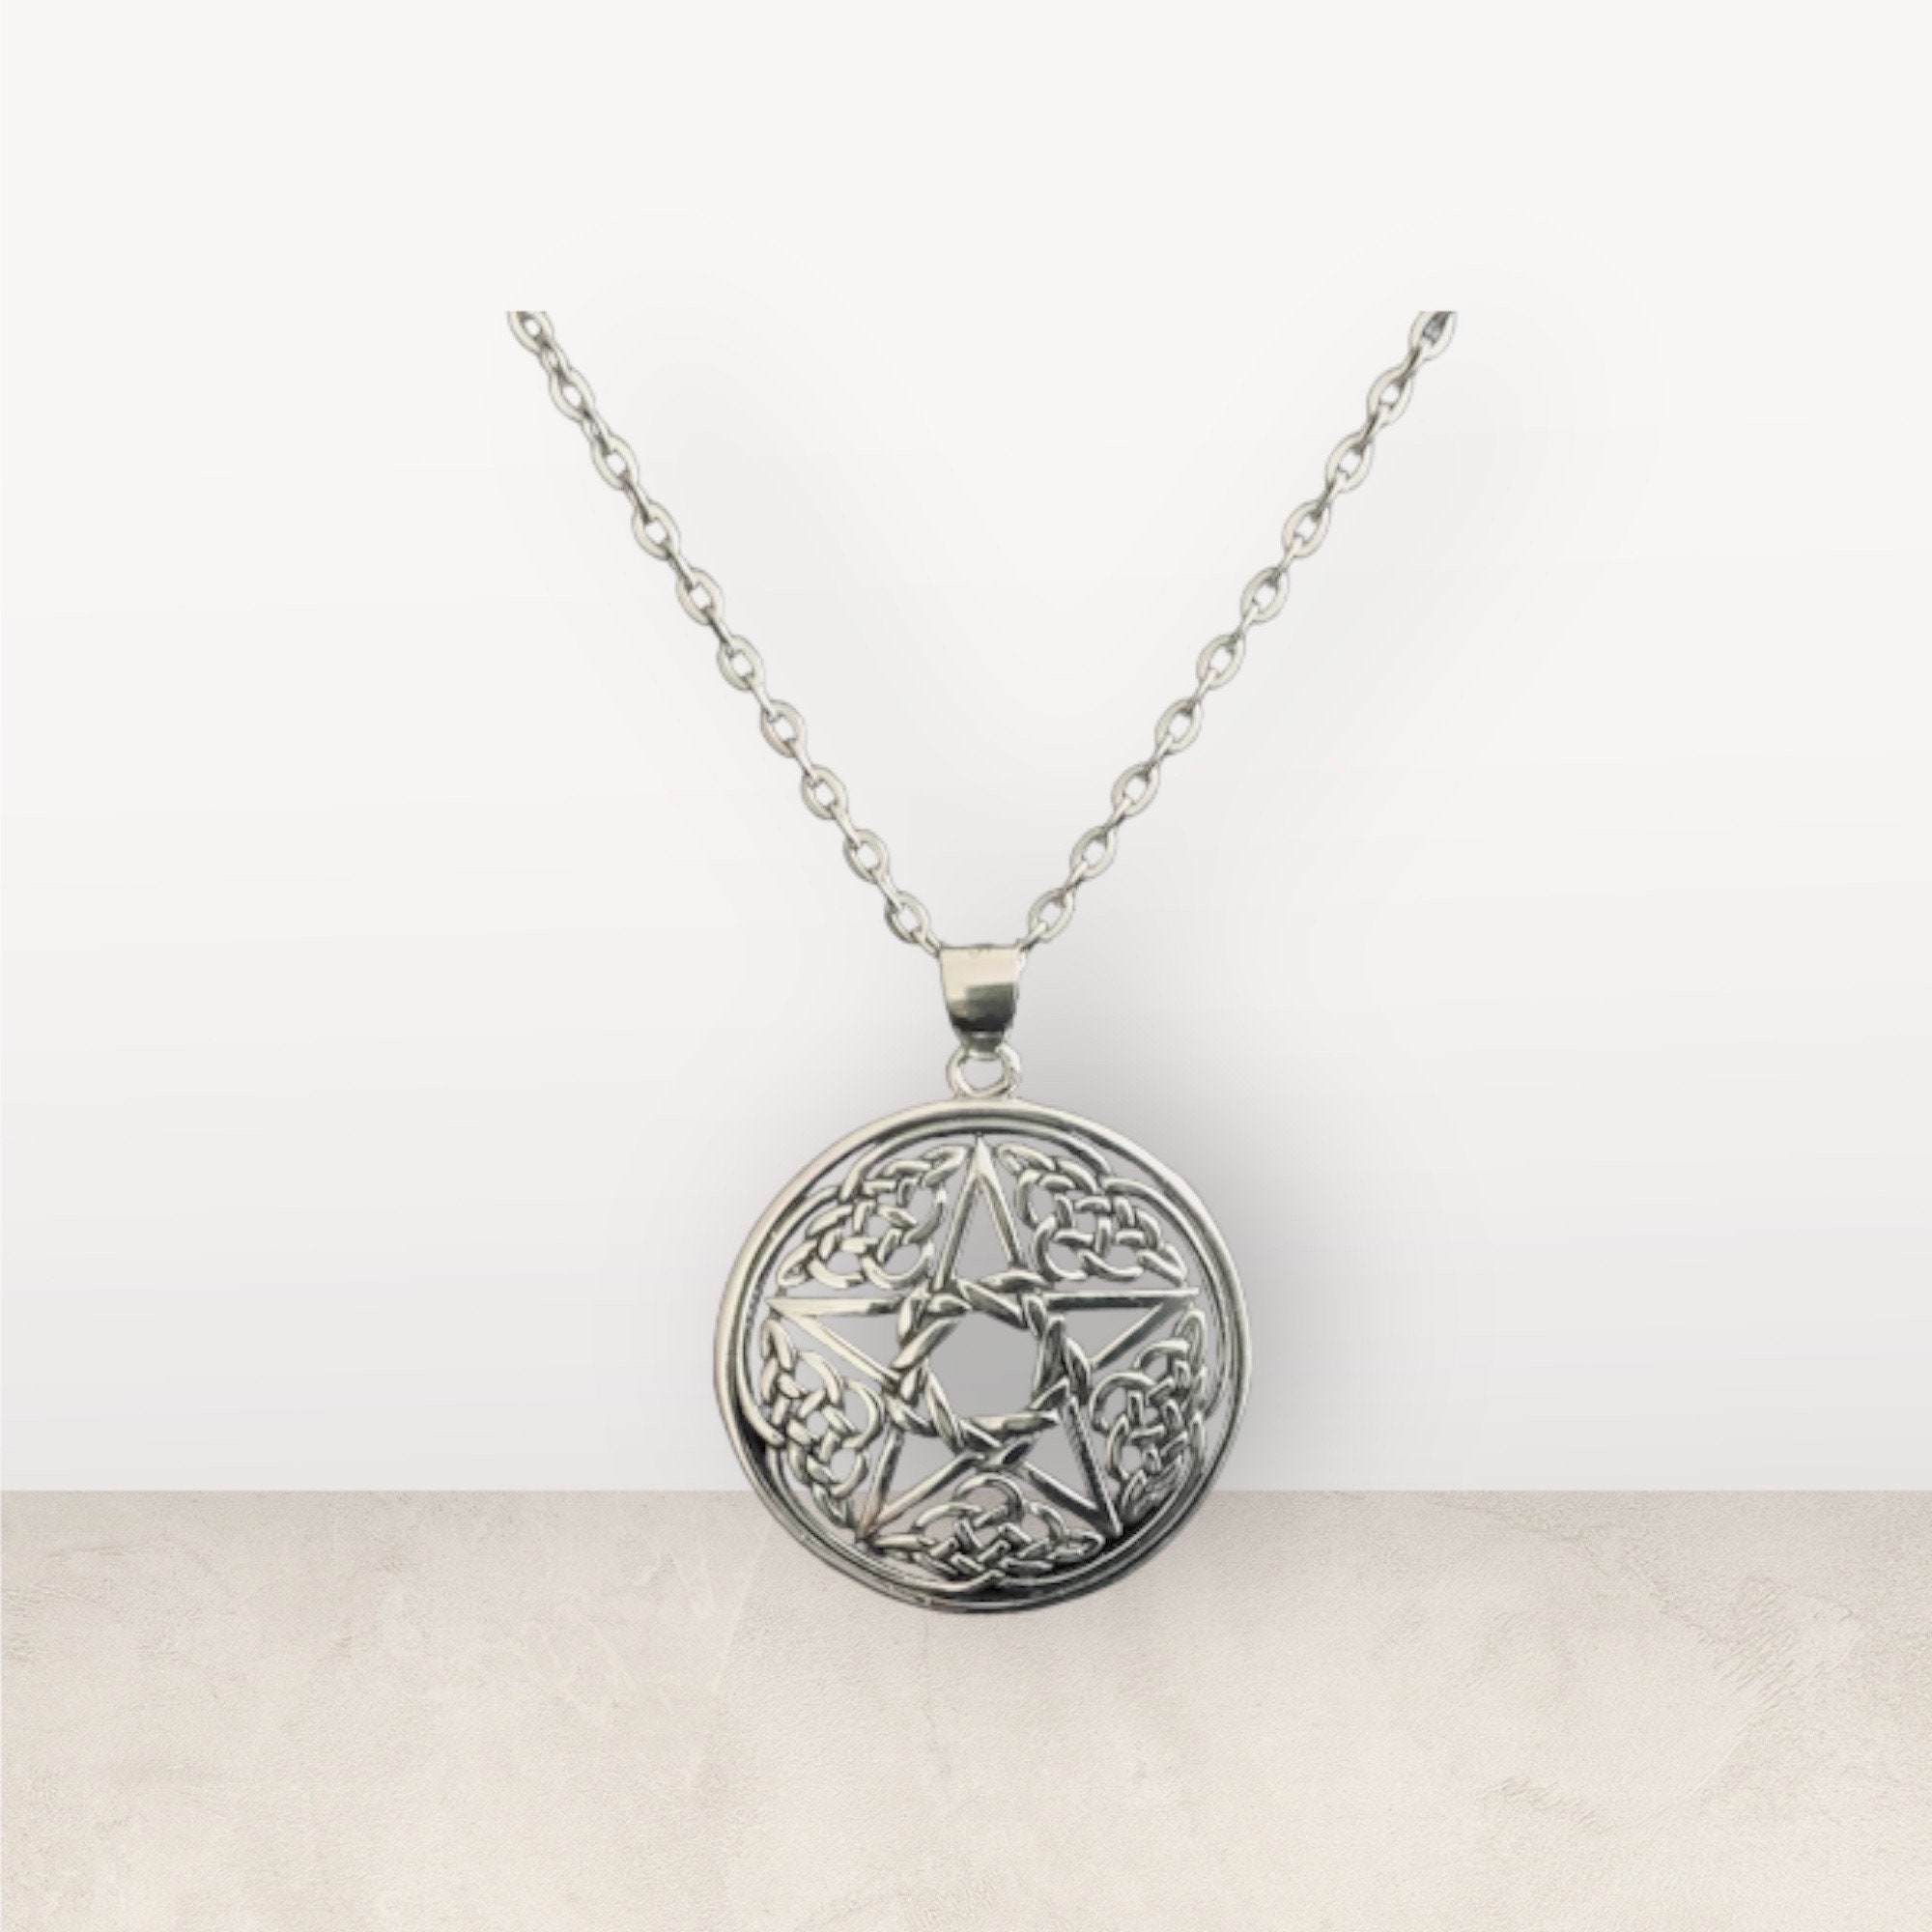 Sterling silver pentacle pentagram pendant 23mm | eBay | Pentagram pendant,  Pendant, Silver